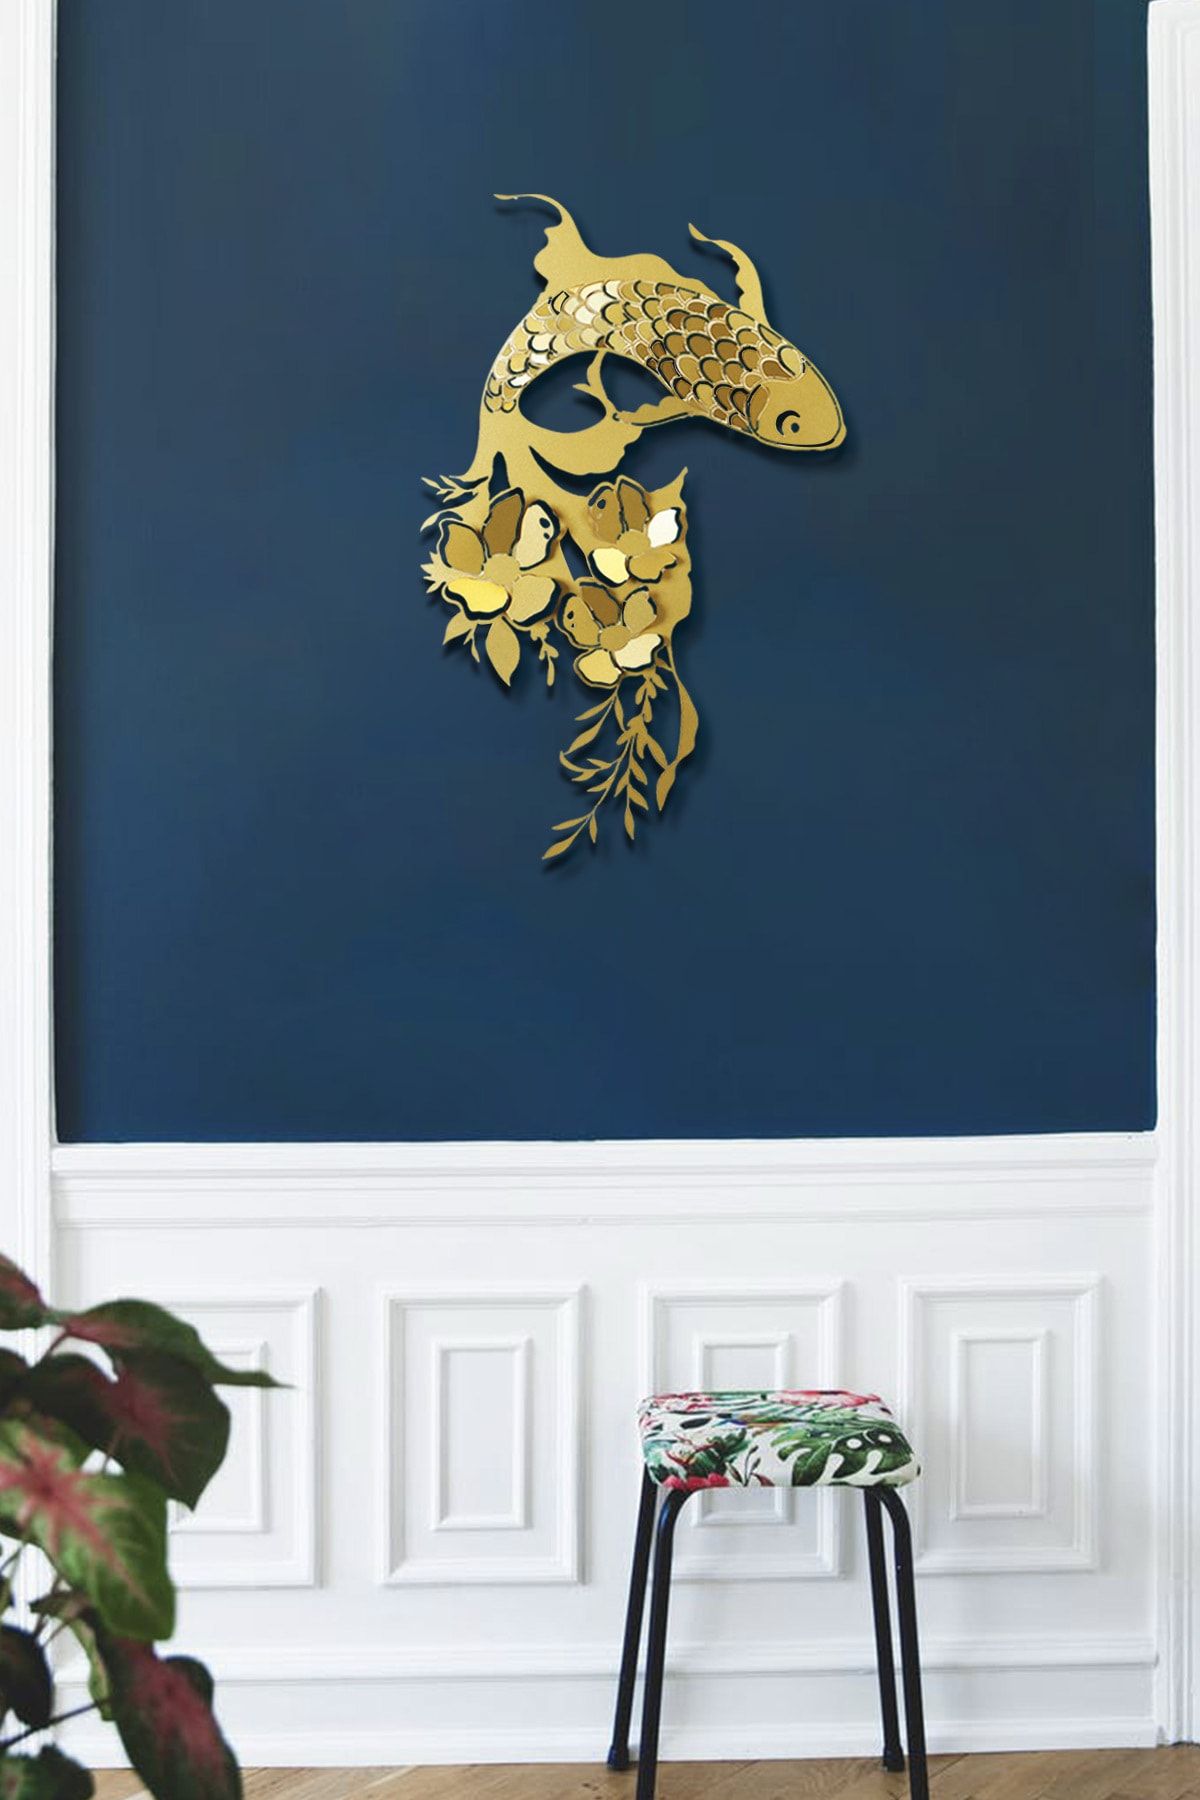 Artepera Carpa Koi Metal Duvar Tablosu - Altın Renk Balık Tablosu - Ev Ofis Dekorasyonları - Apt748